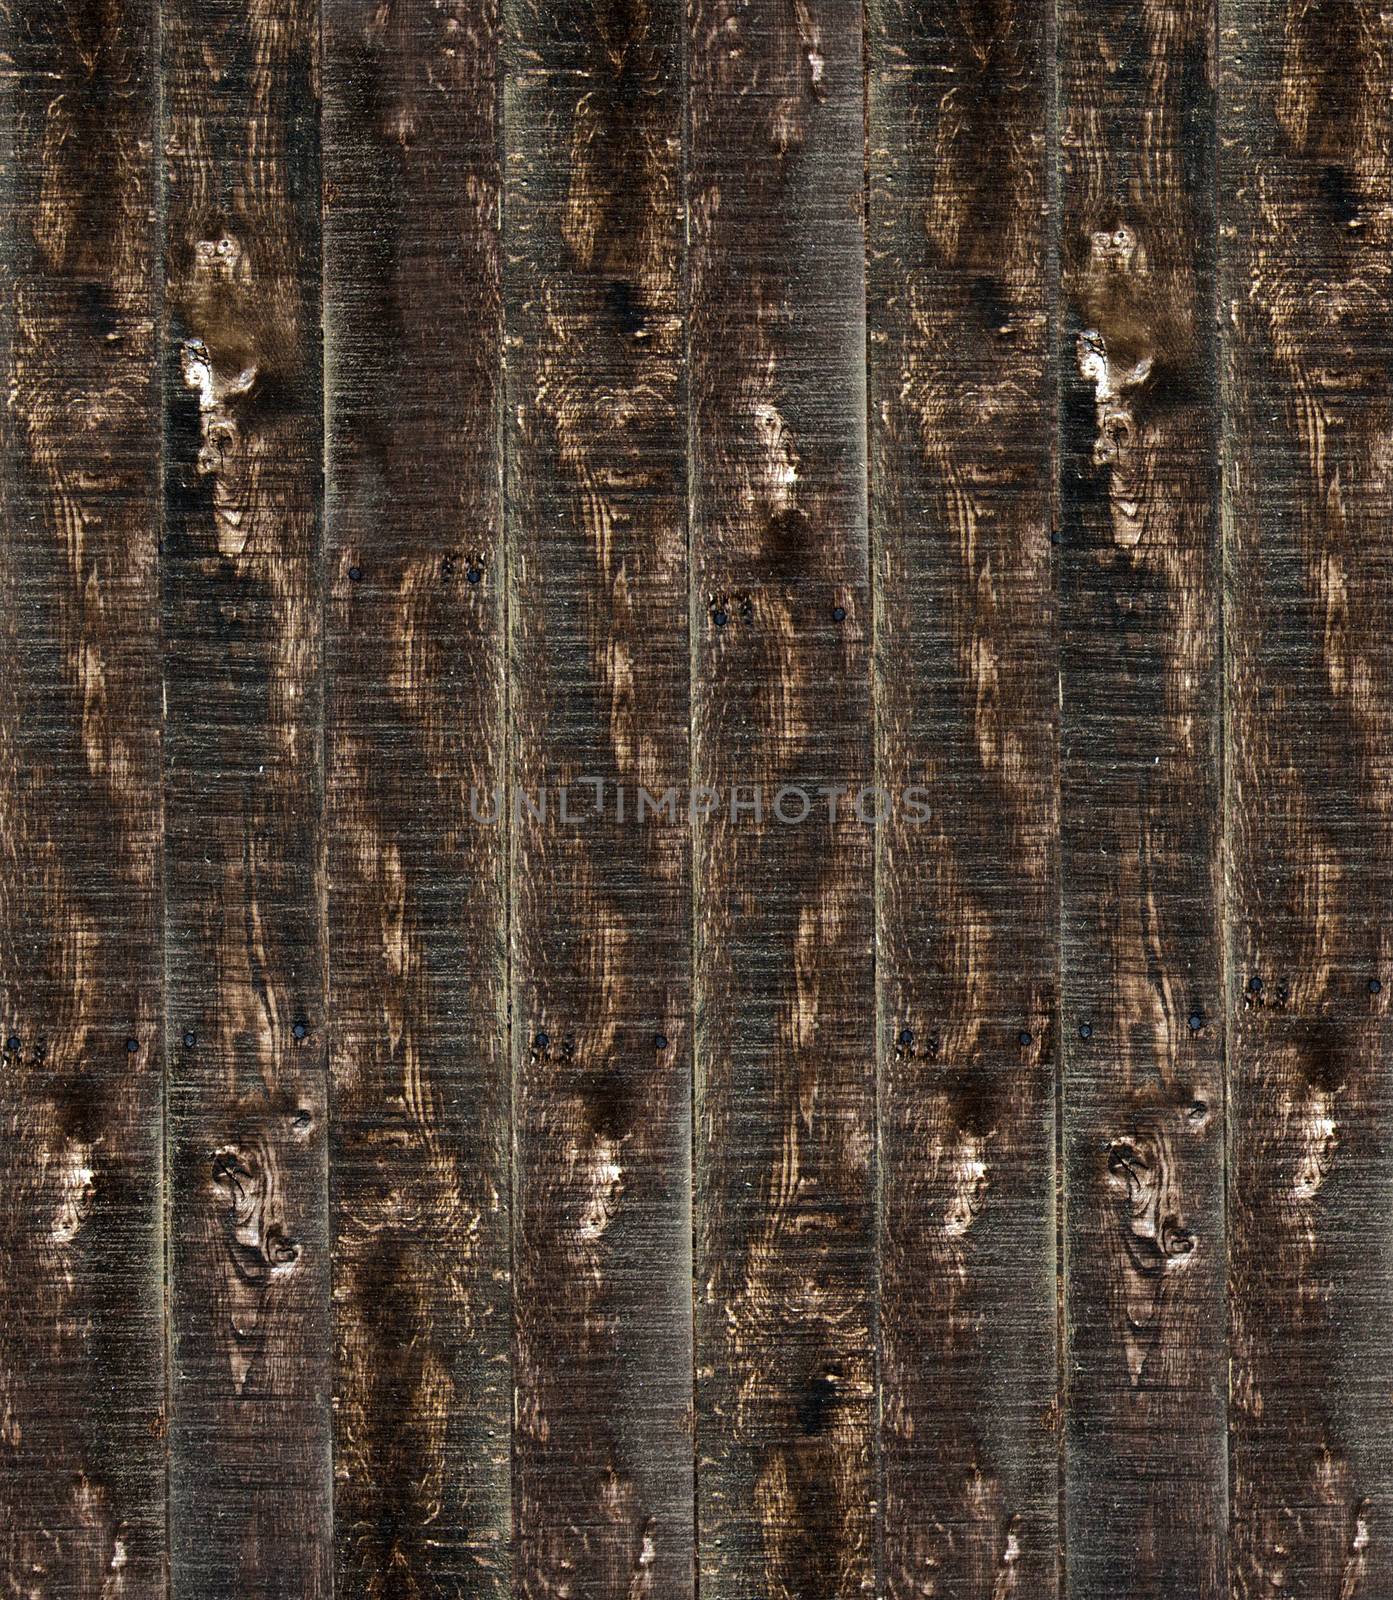 Wood texture by Pakhnyushchyy